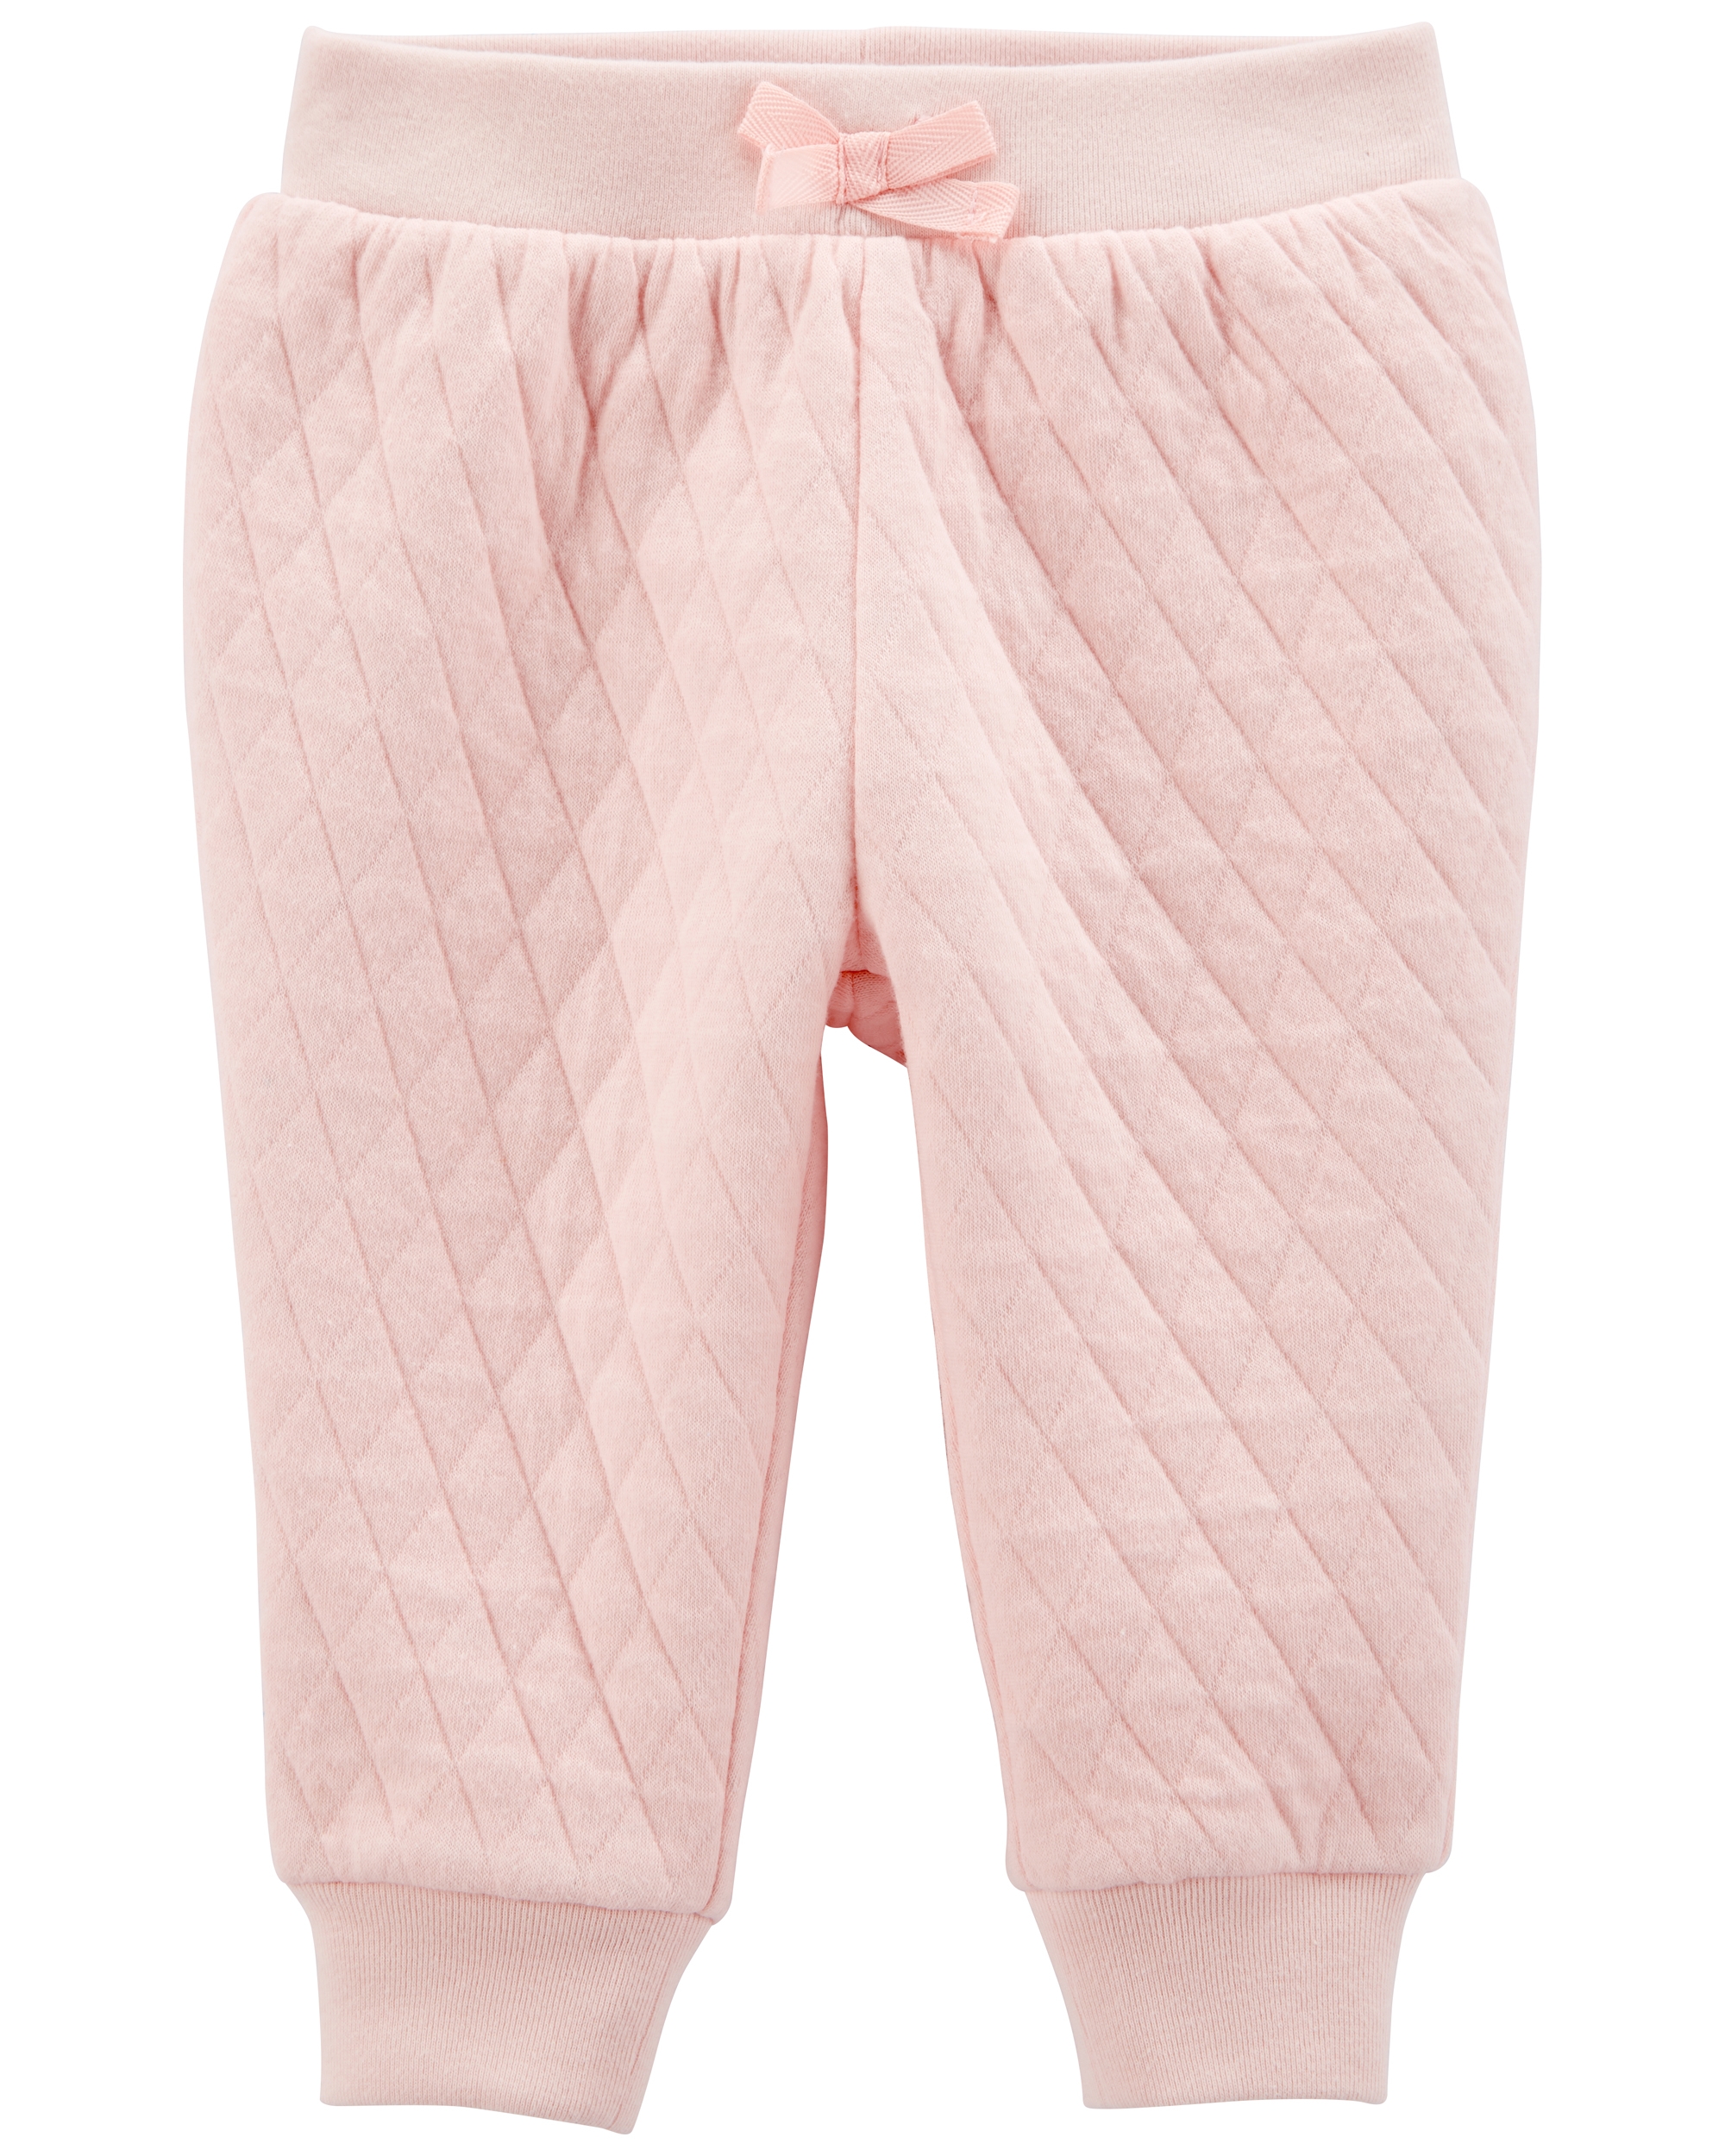 Pantaloni matlasati roz cartersoshkosh.ro